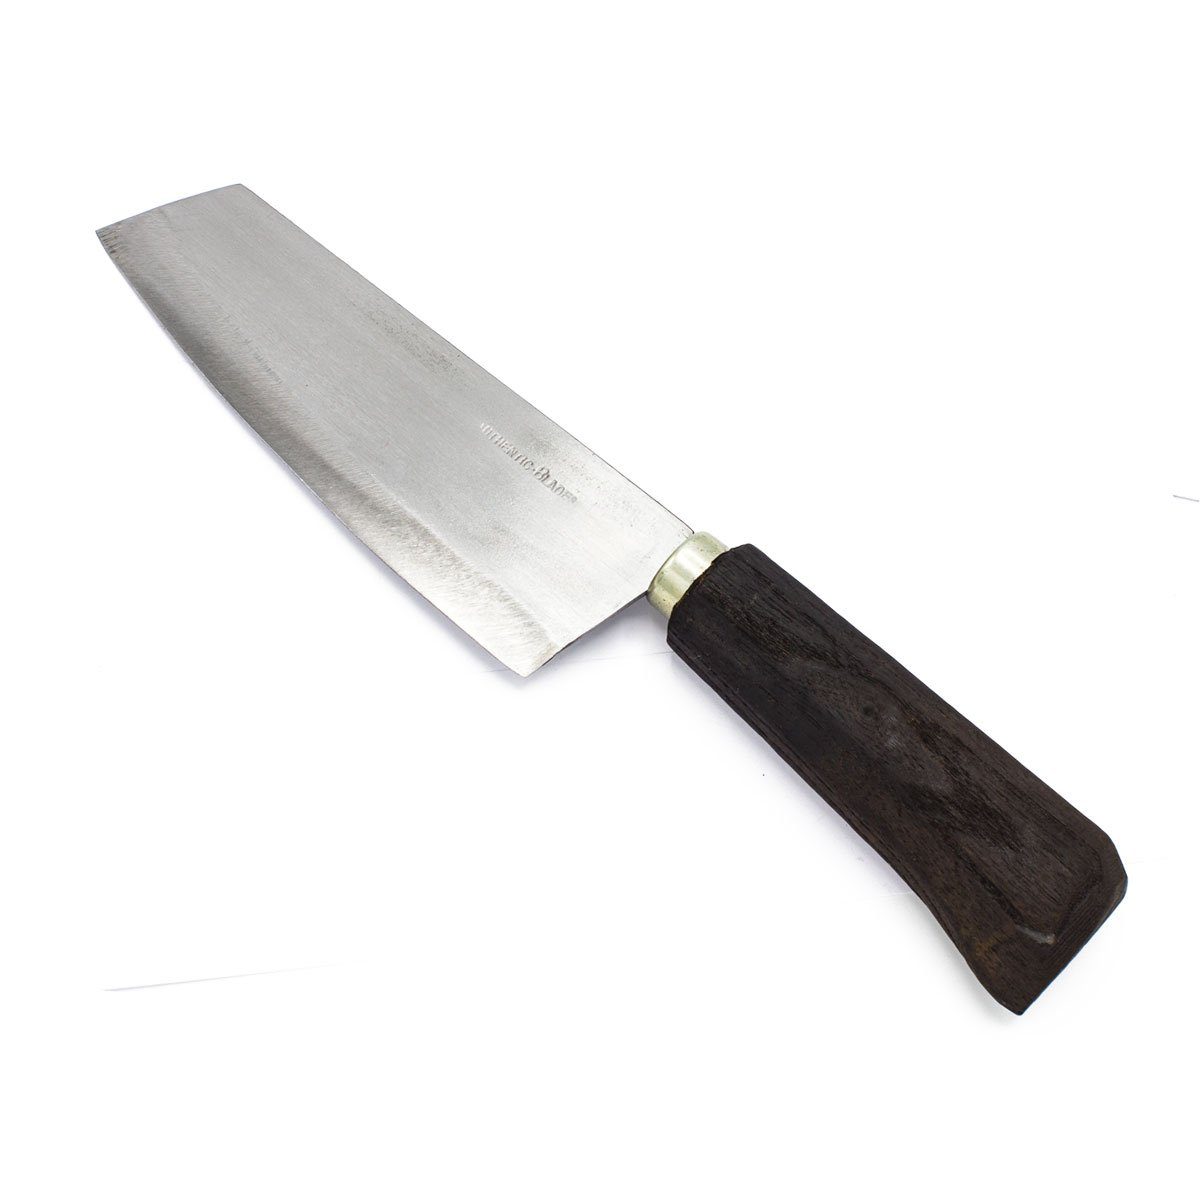 Authentic Blades Universalmesser Handgefertigtes rustikales Chefmesser oder Kochmesser 16cm Klinge